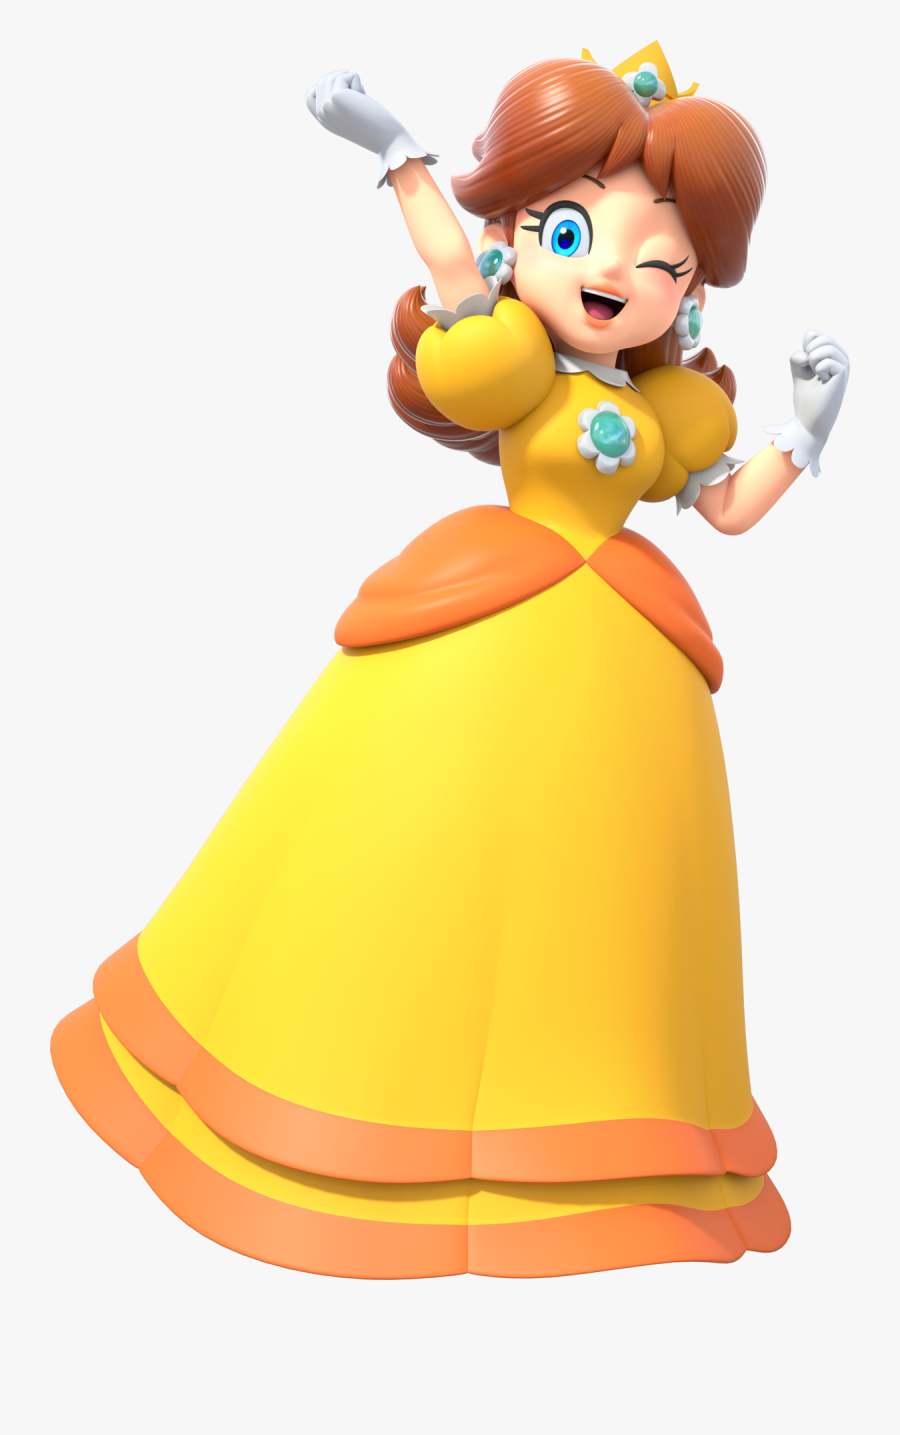 Super Mario Party Daisy - Daisy Mario, Transparent Clipart